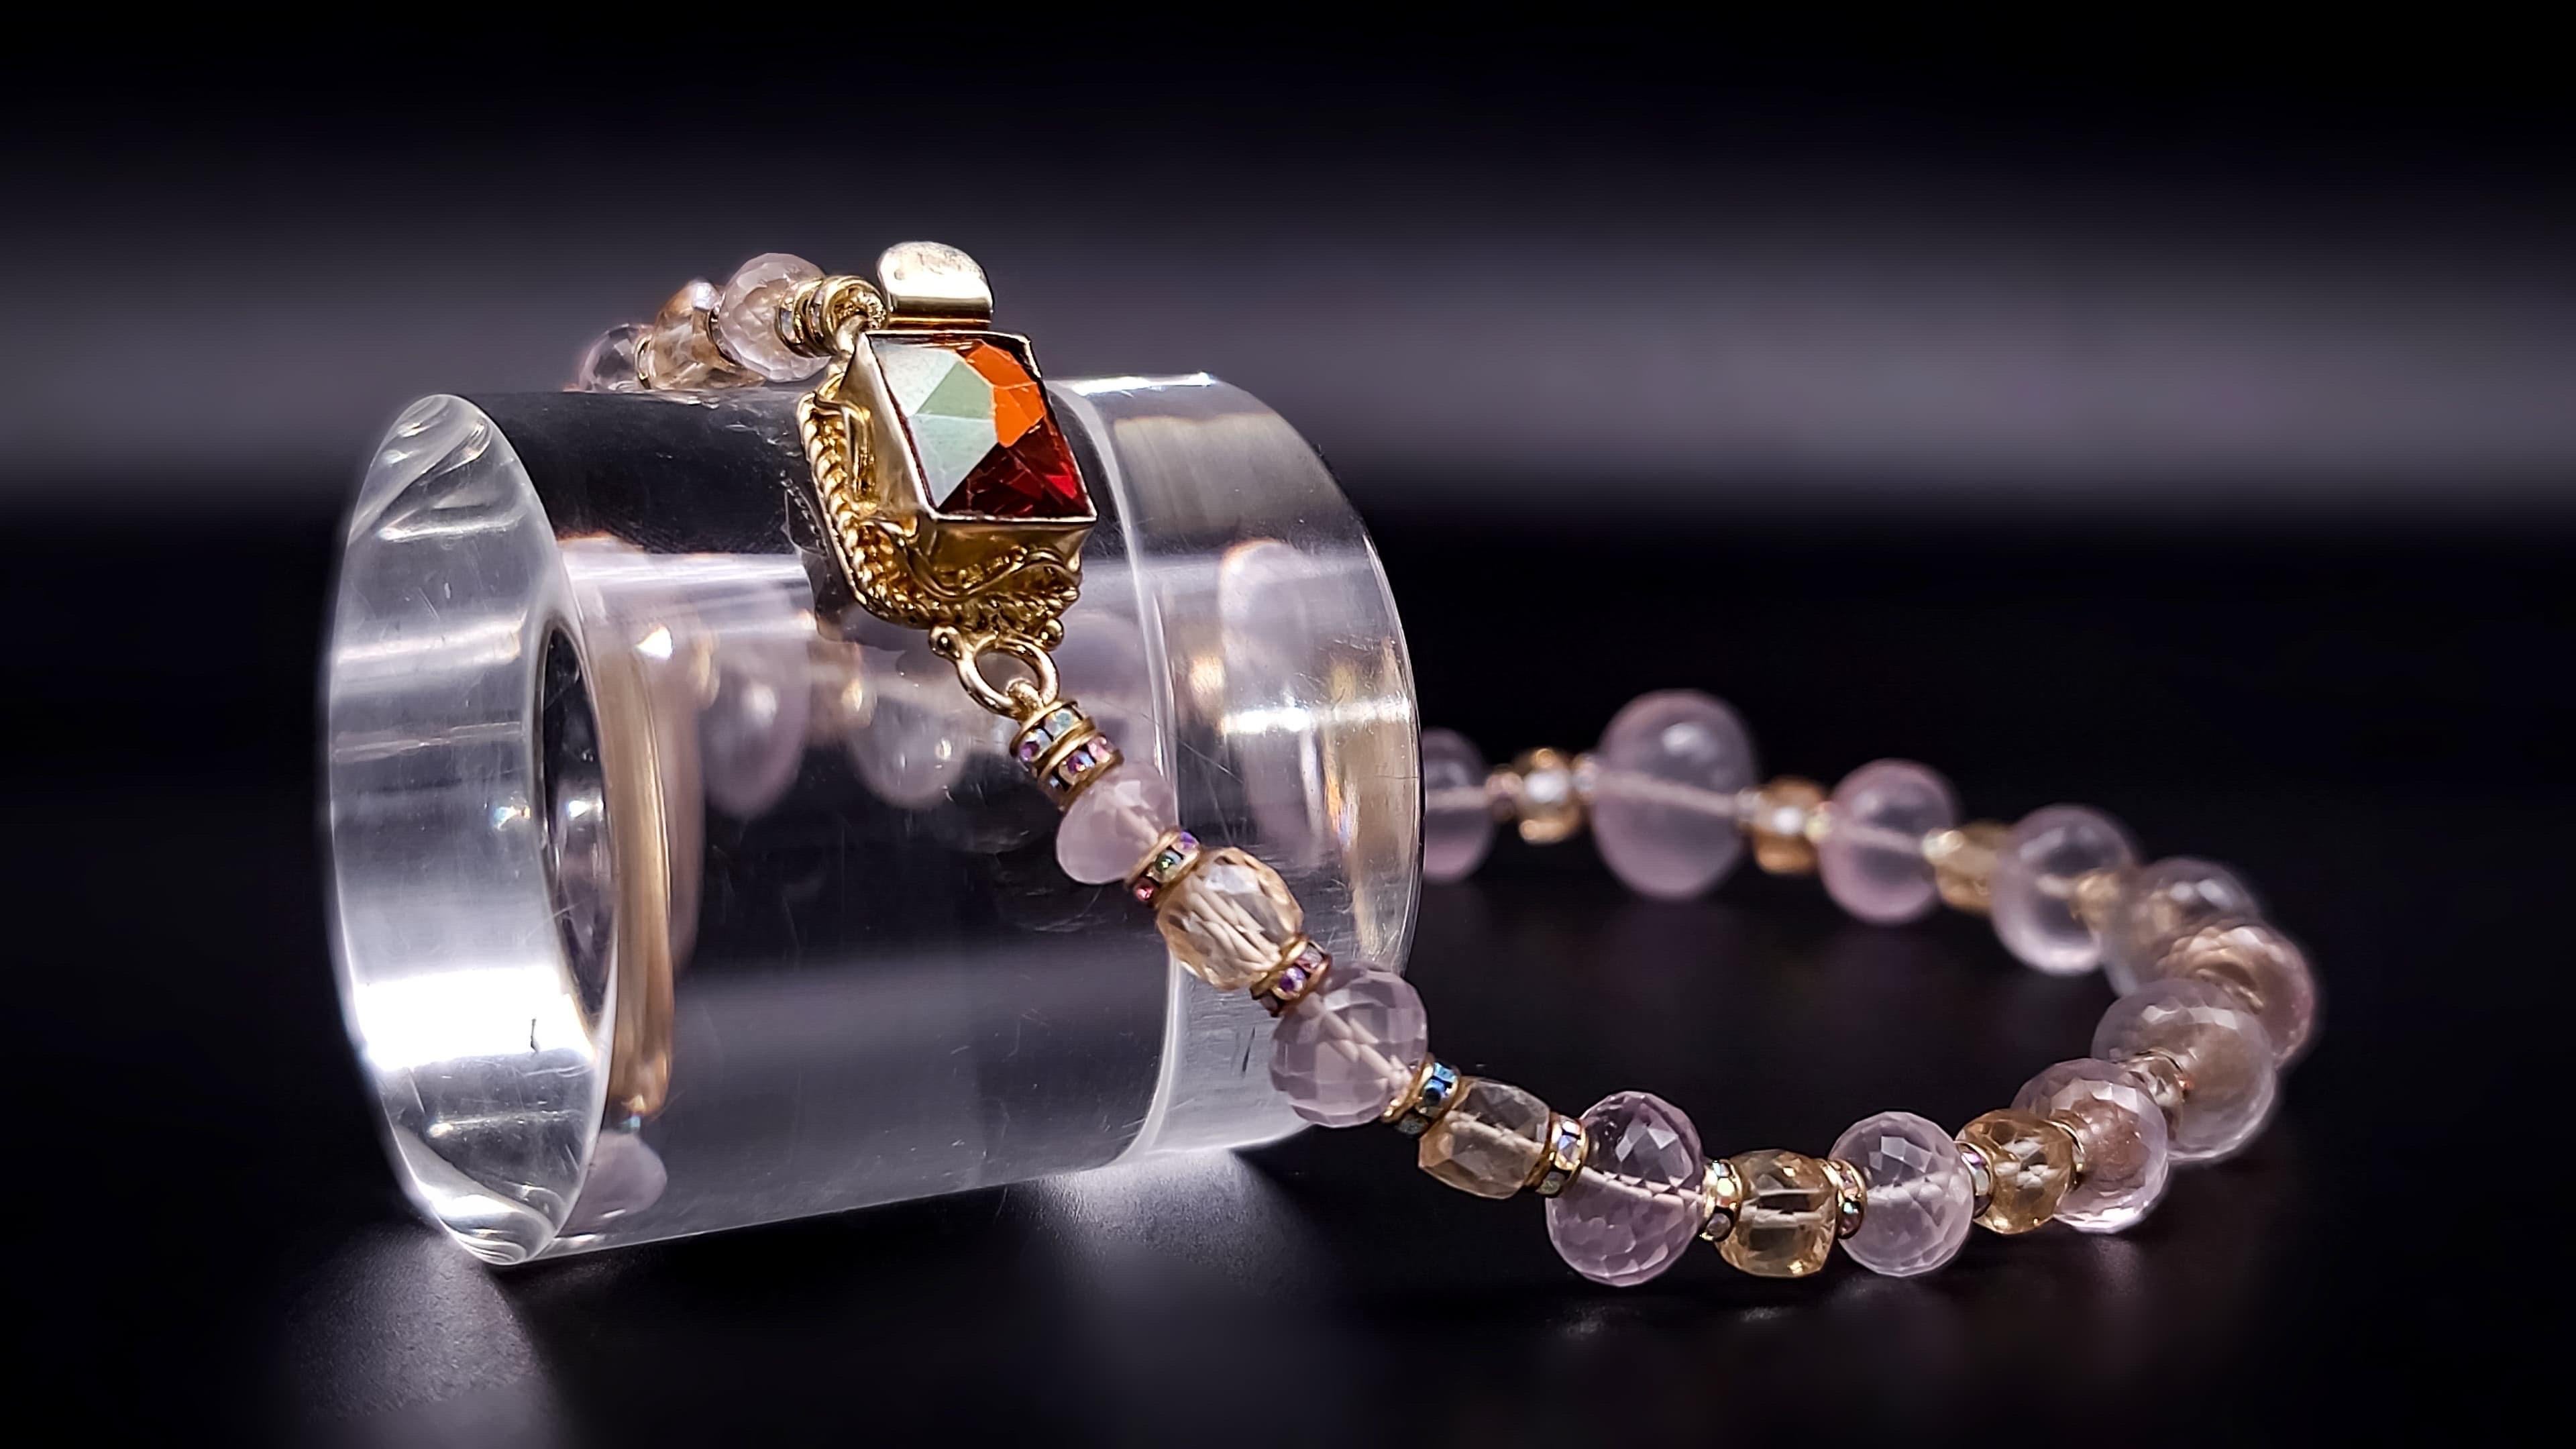 A.Jeschel Romantic Rose Quartz single strand necklace. 6